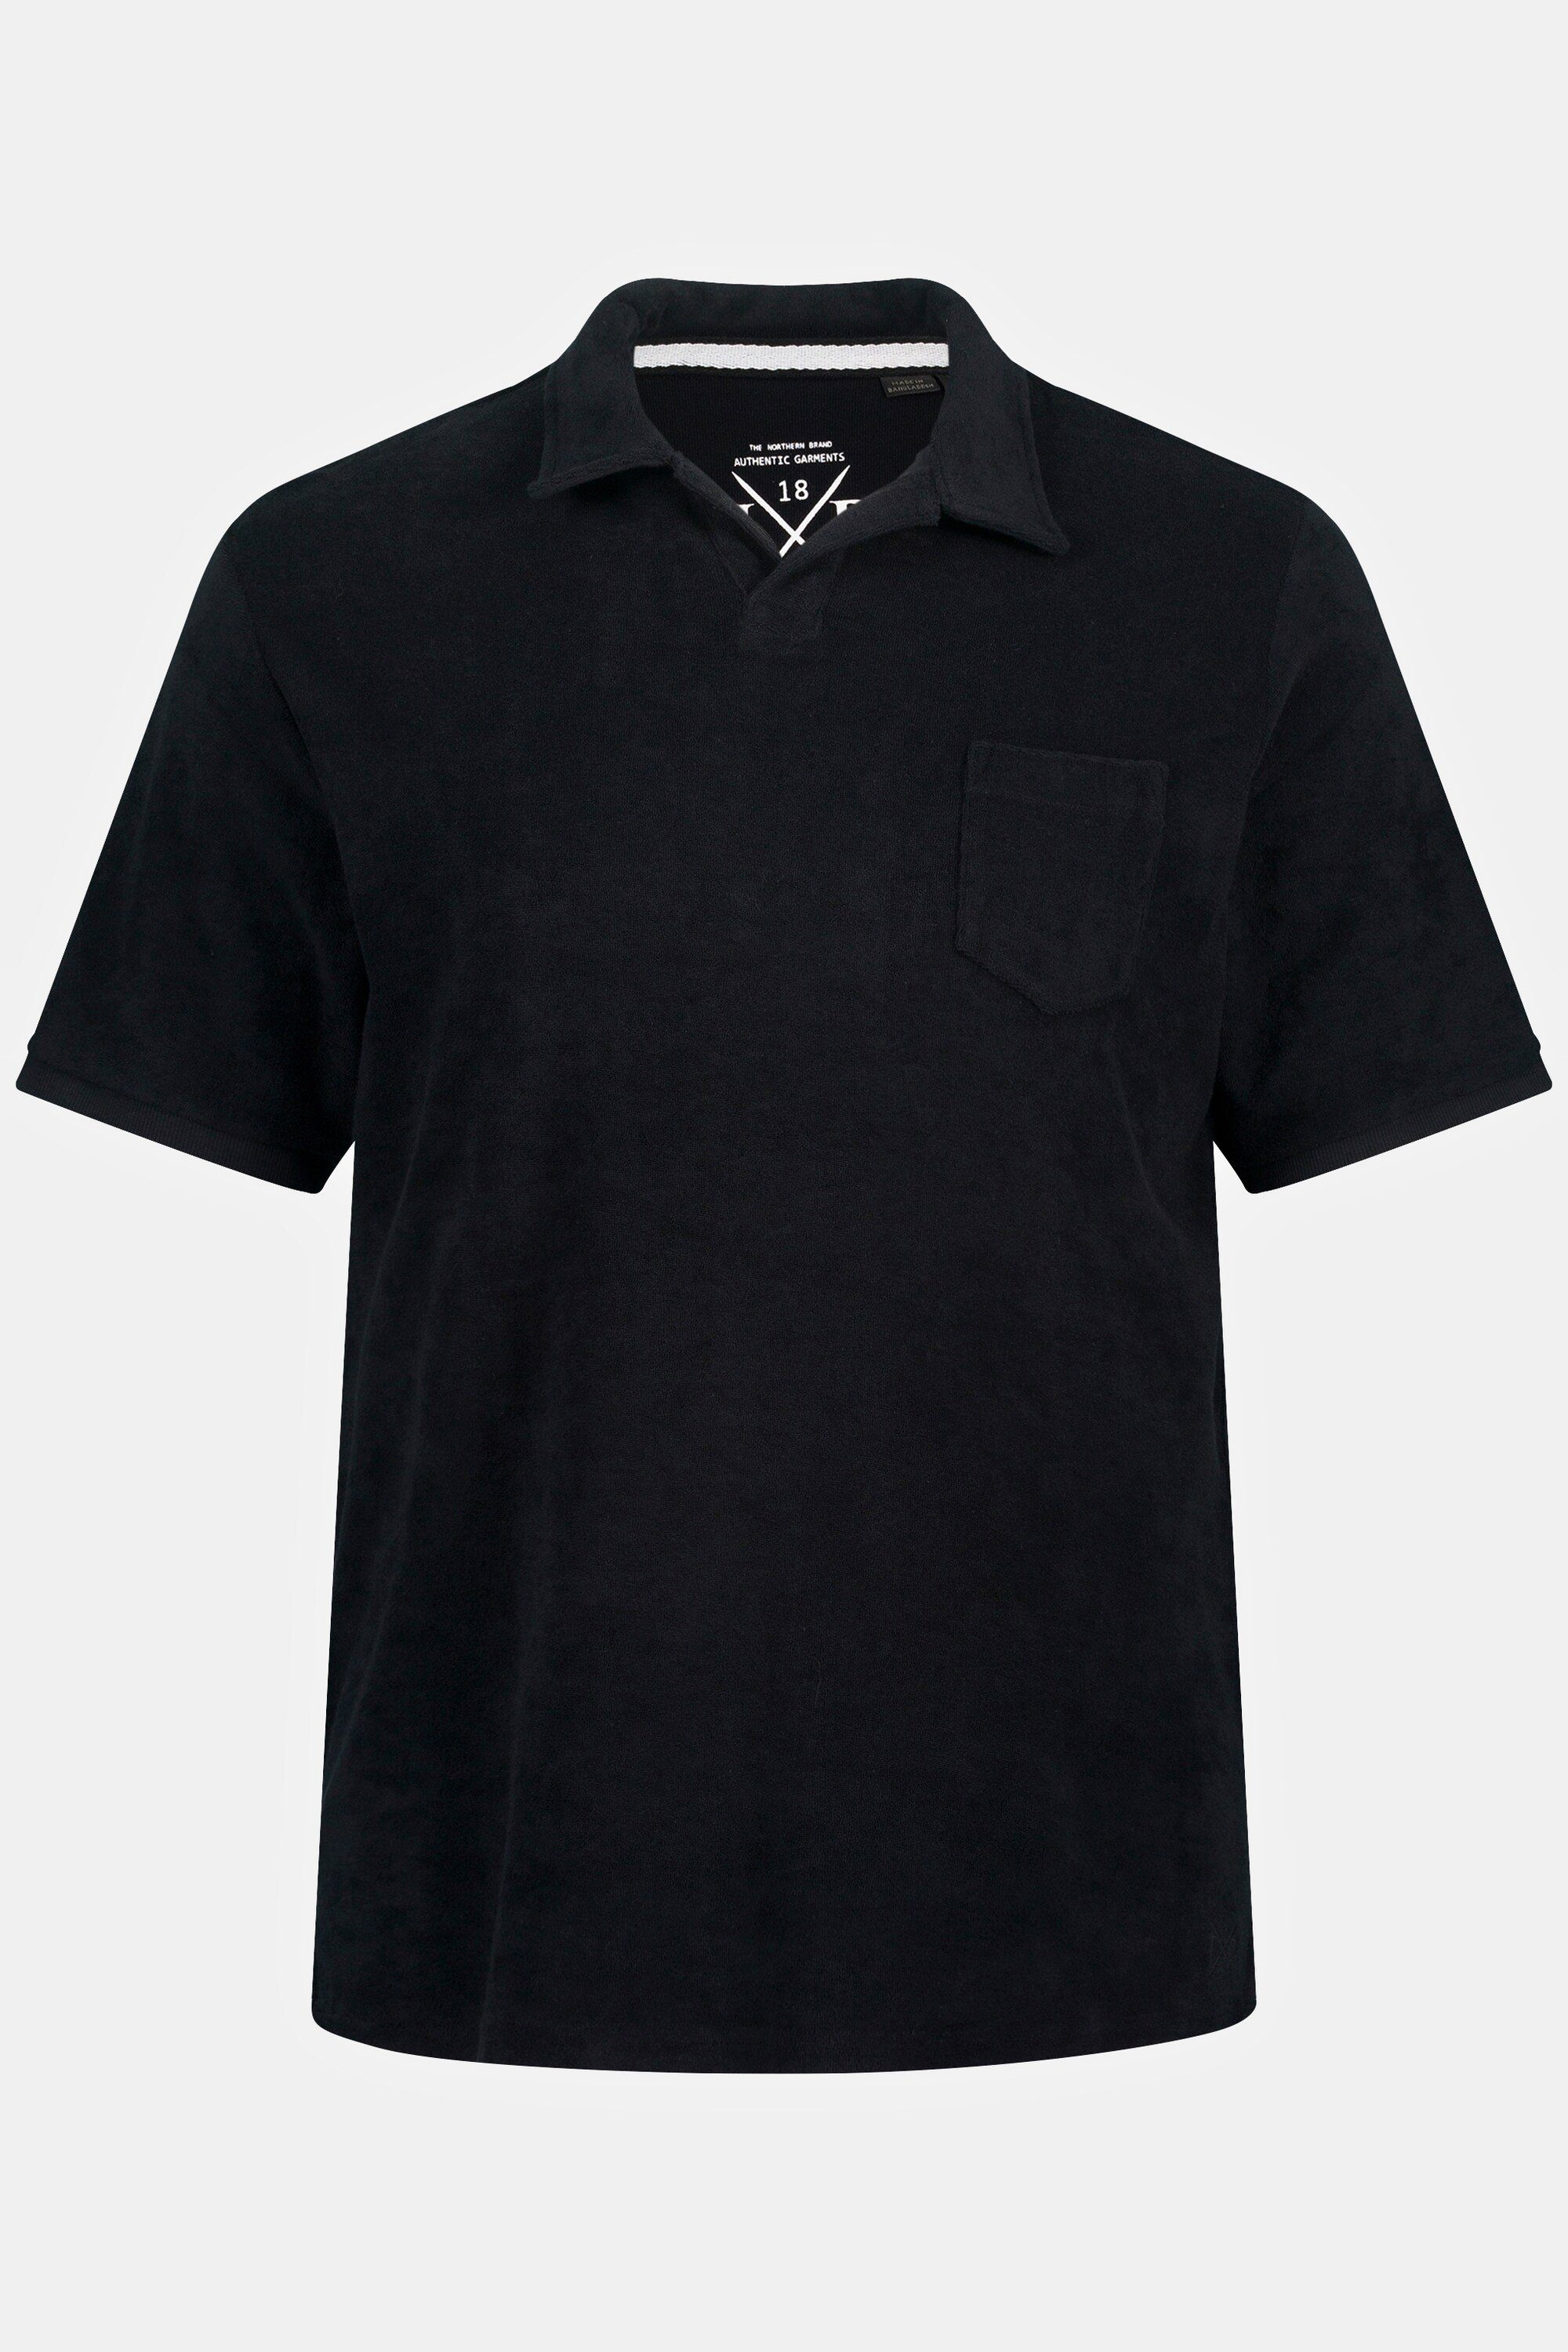 JP1880 Cuba-Kragen Frottee Halbarm schwarz Poloshirt Poloshirt